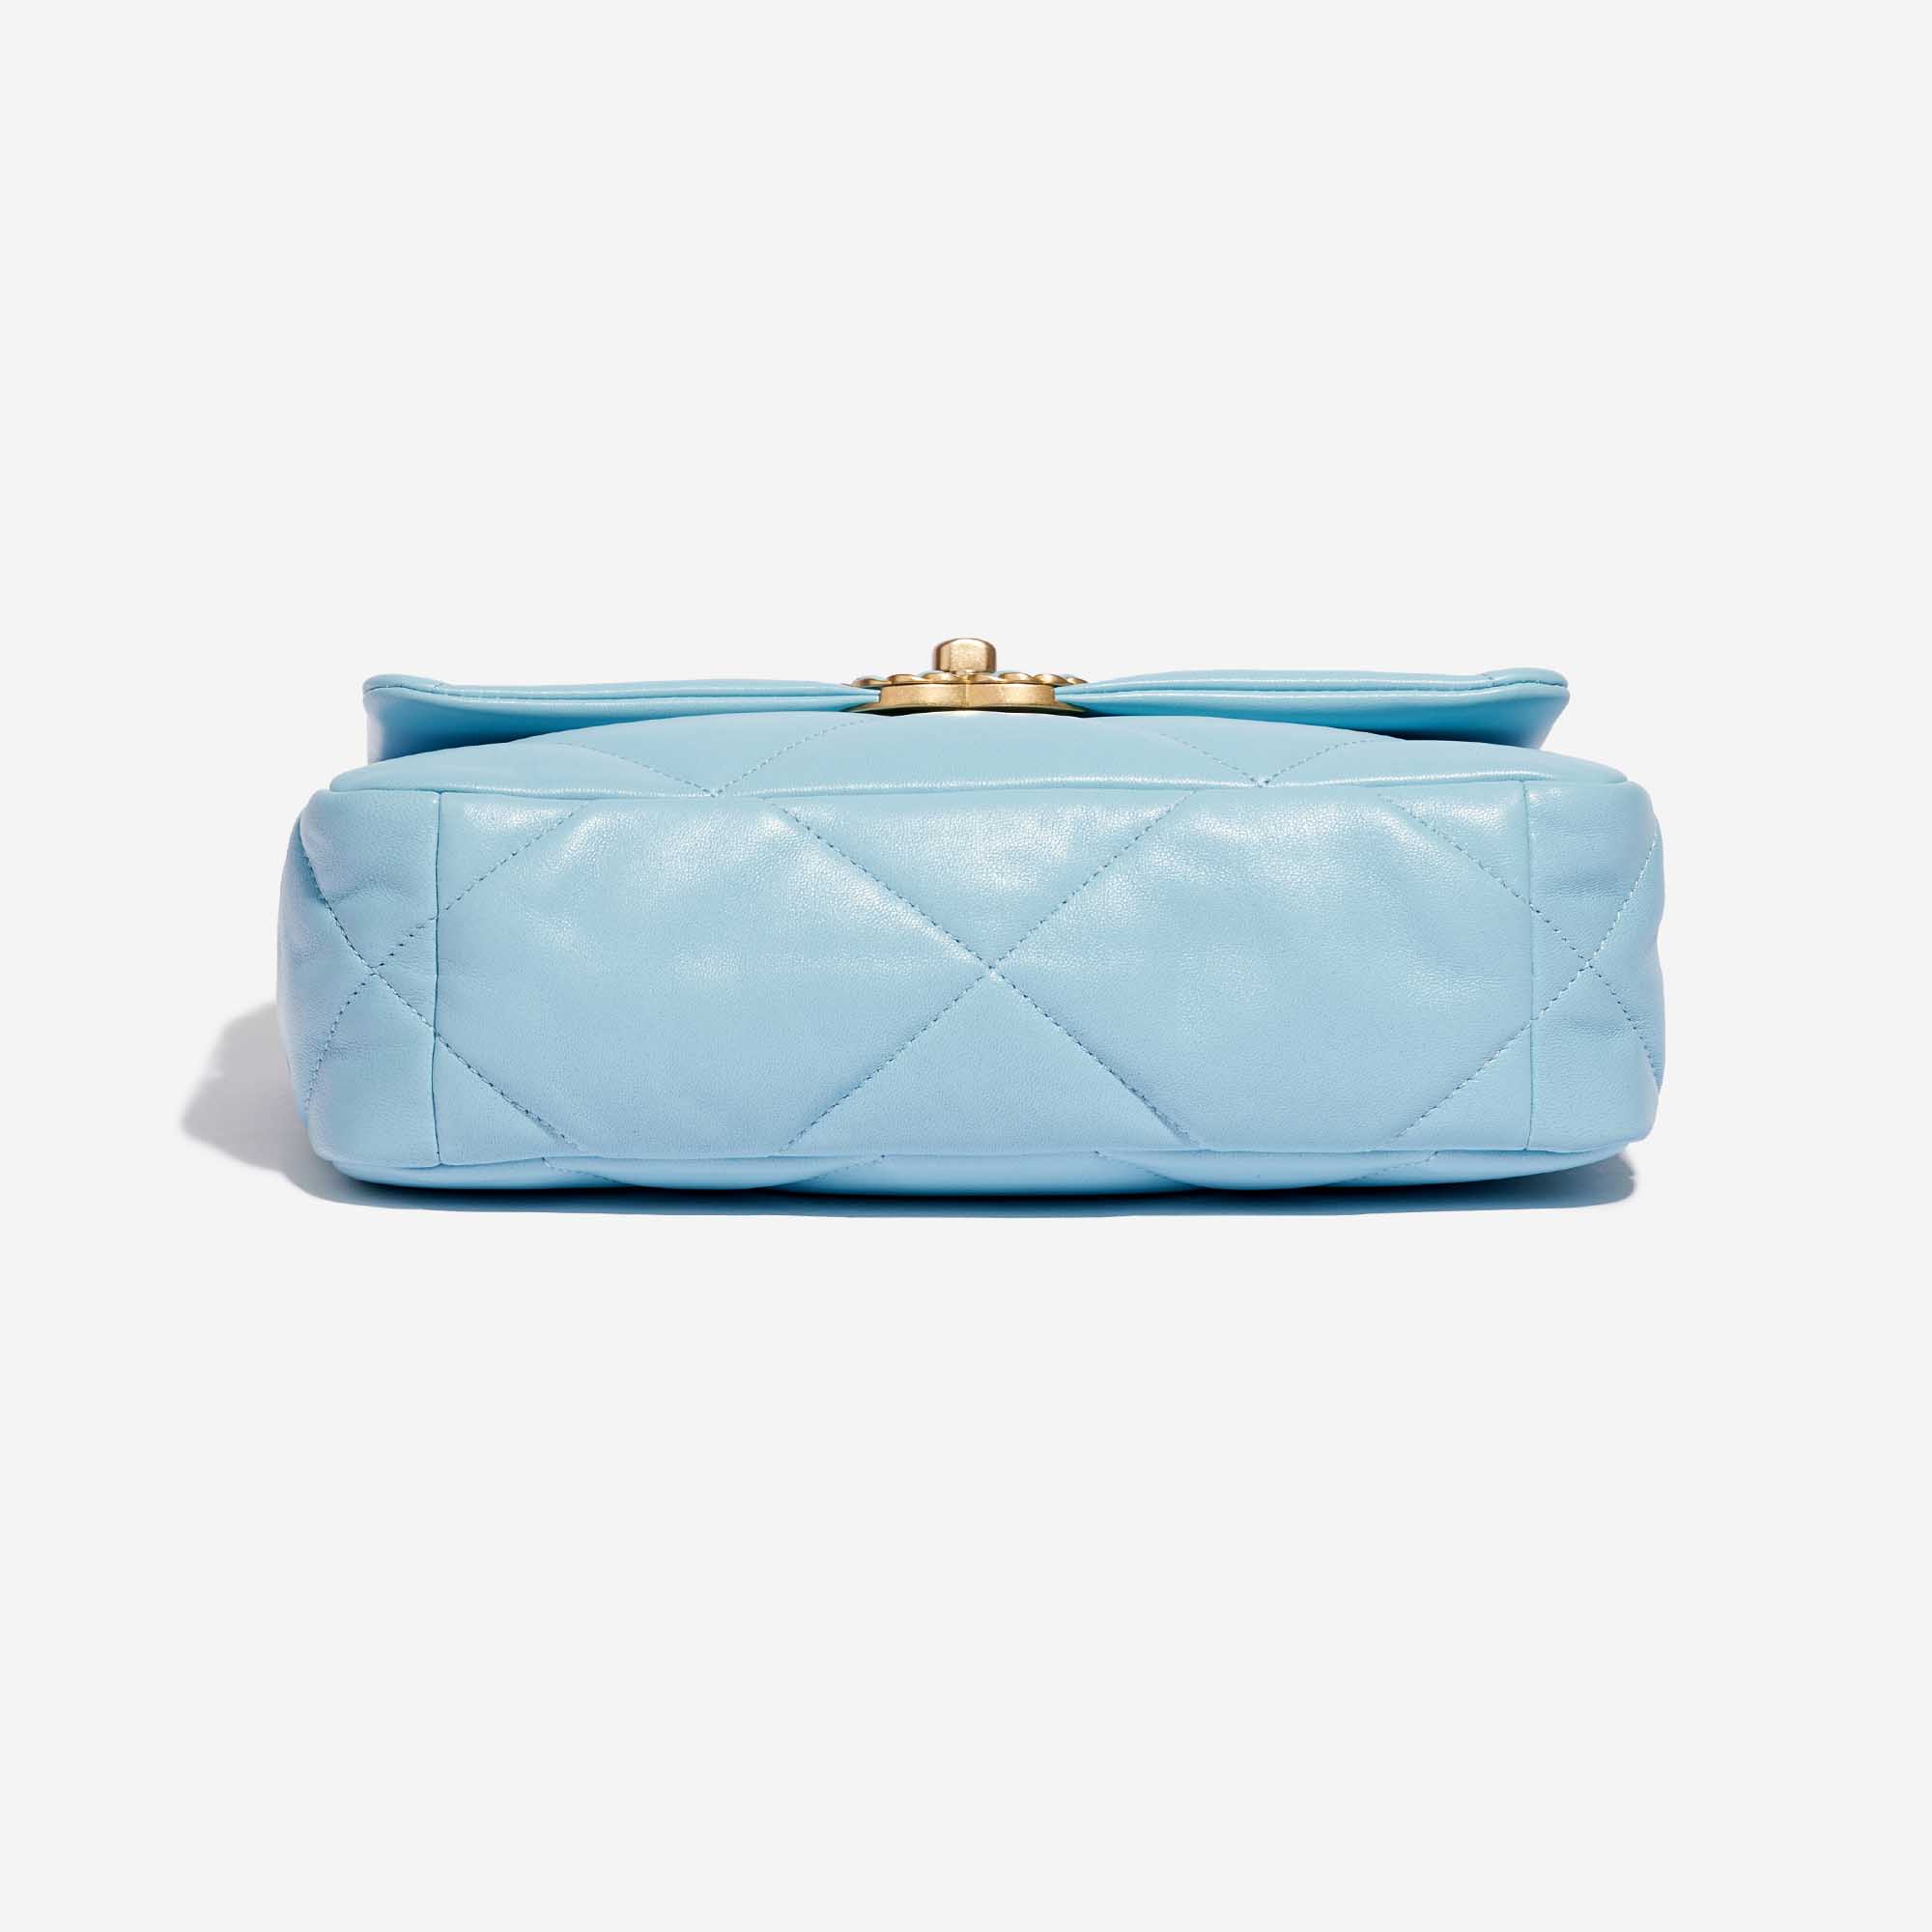 Pre-owned Chanel Tasche 19 Flap Bag Lammleder Sky Blue Blue Bottom | Verkaufen Sie Ihre Designer-Tasche auf Saclab.com